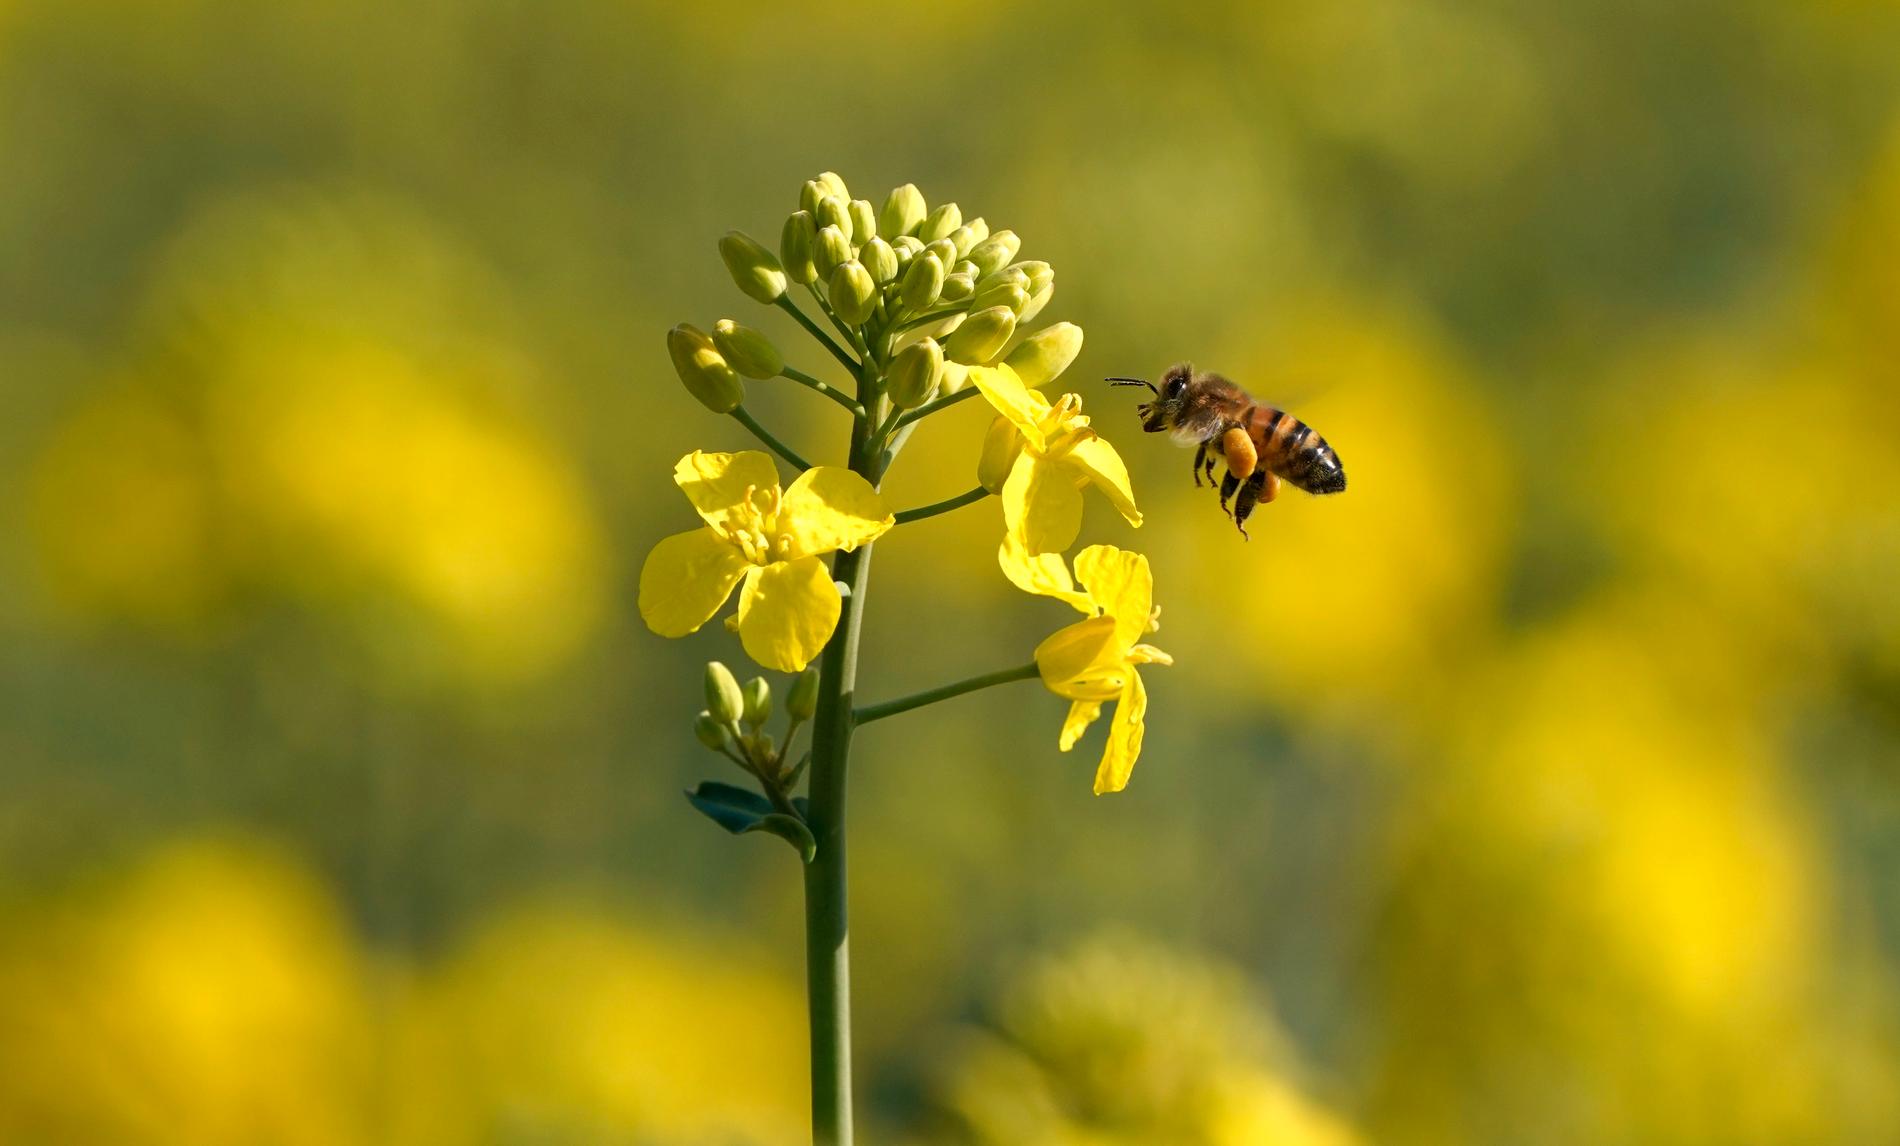 Vi bör hjälpa bina genom att plantera fler blommor och bygga bihotell, tycker WWF.